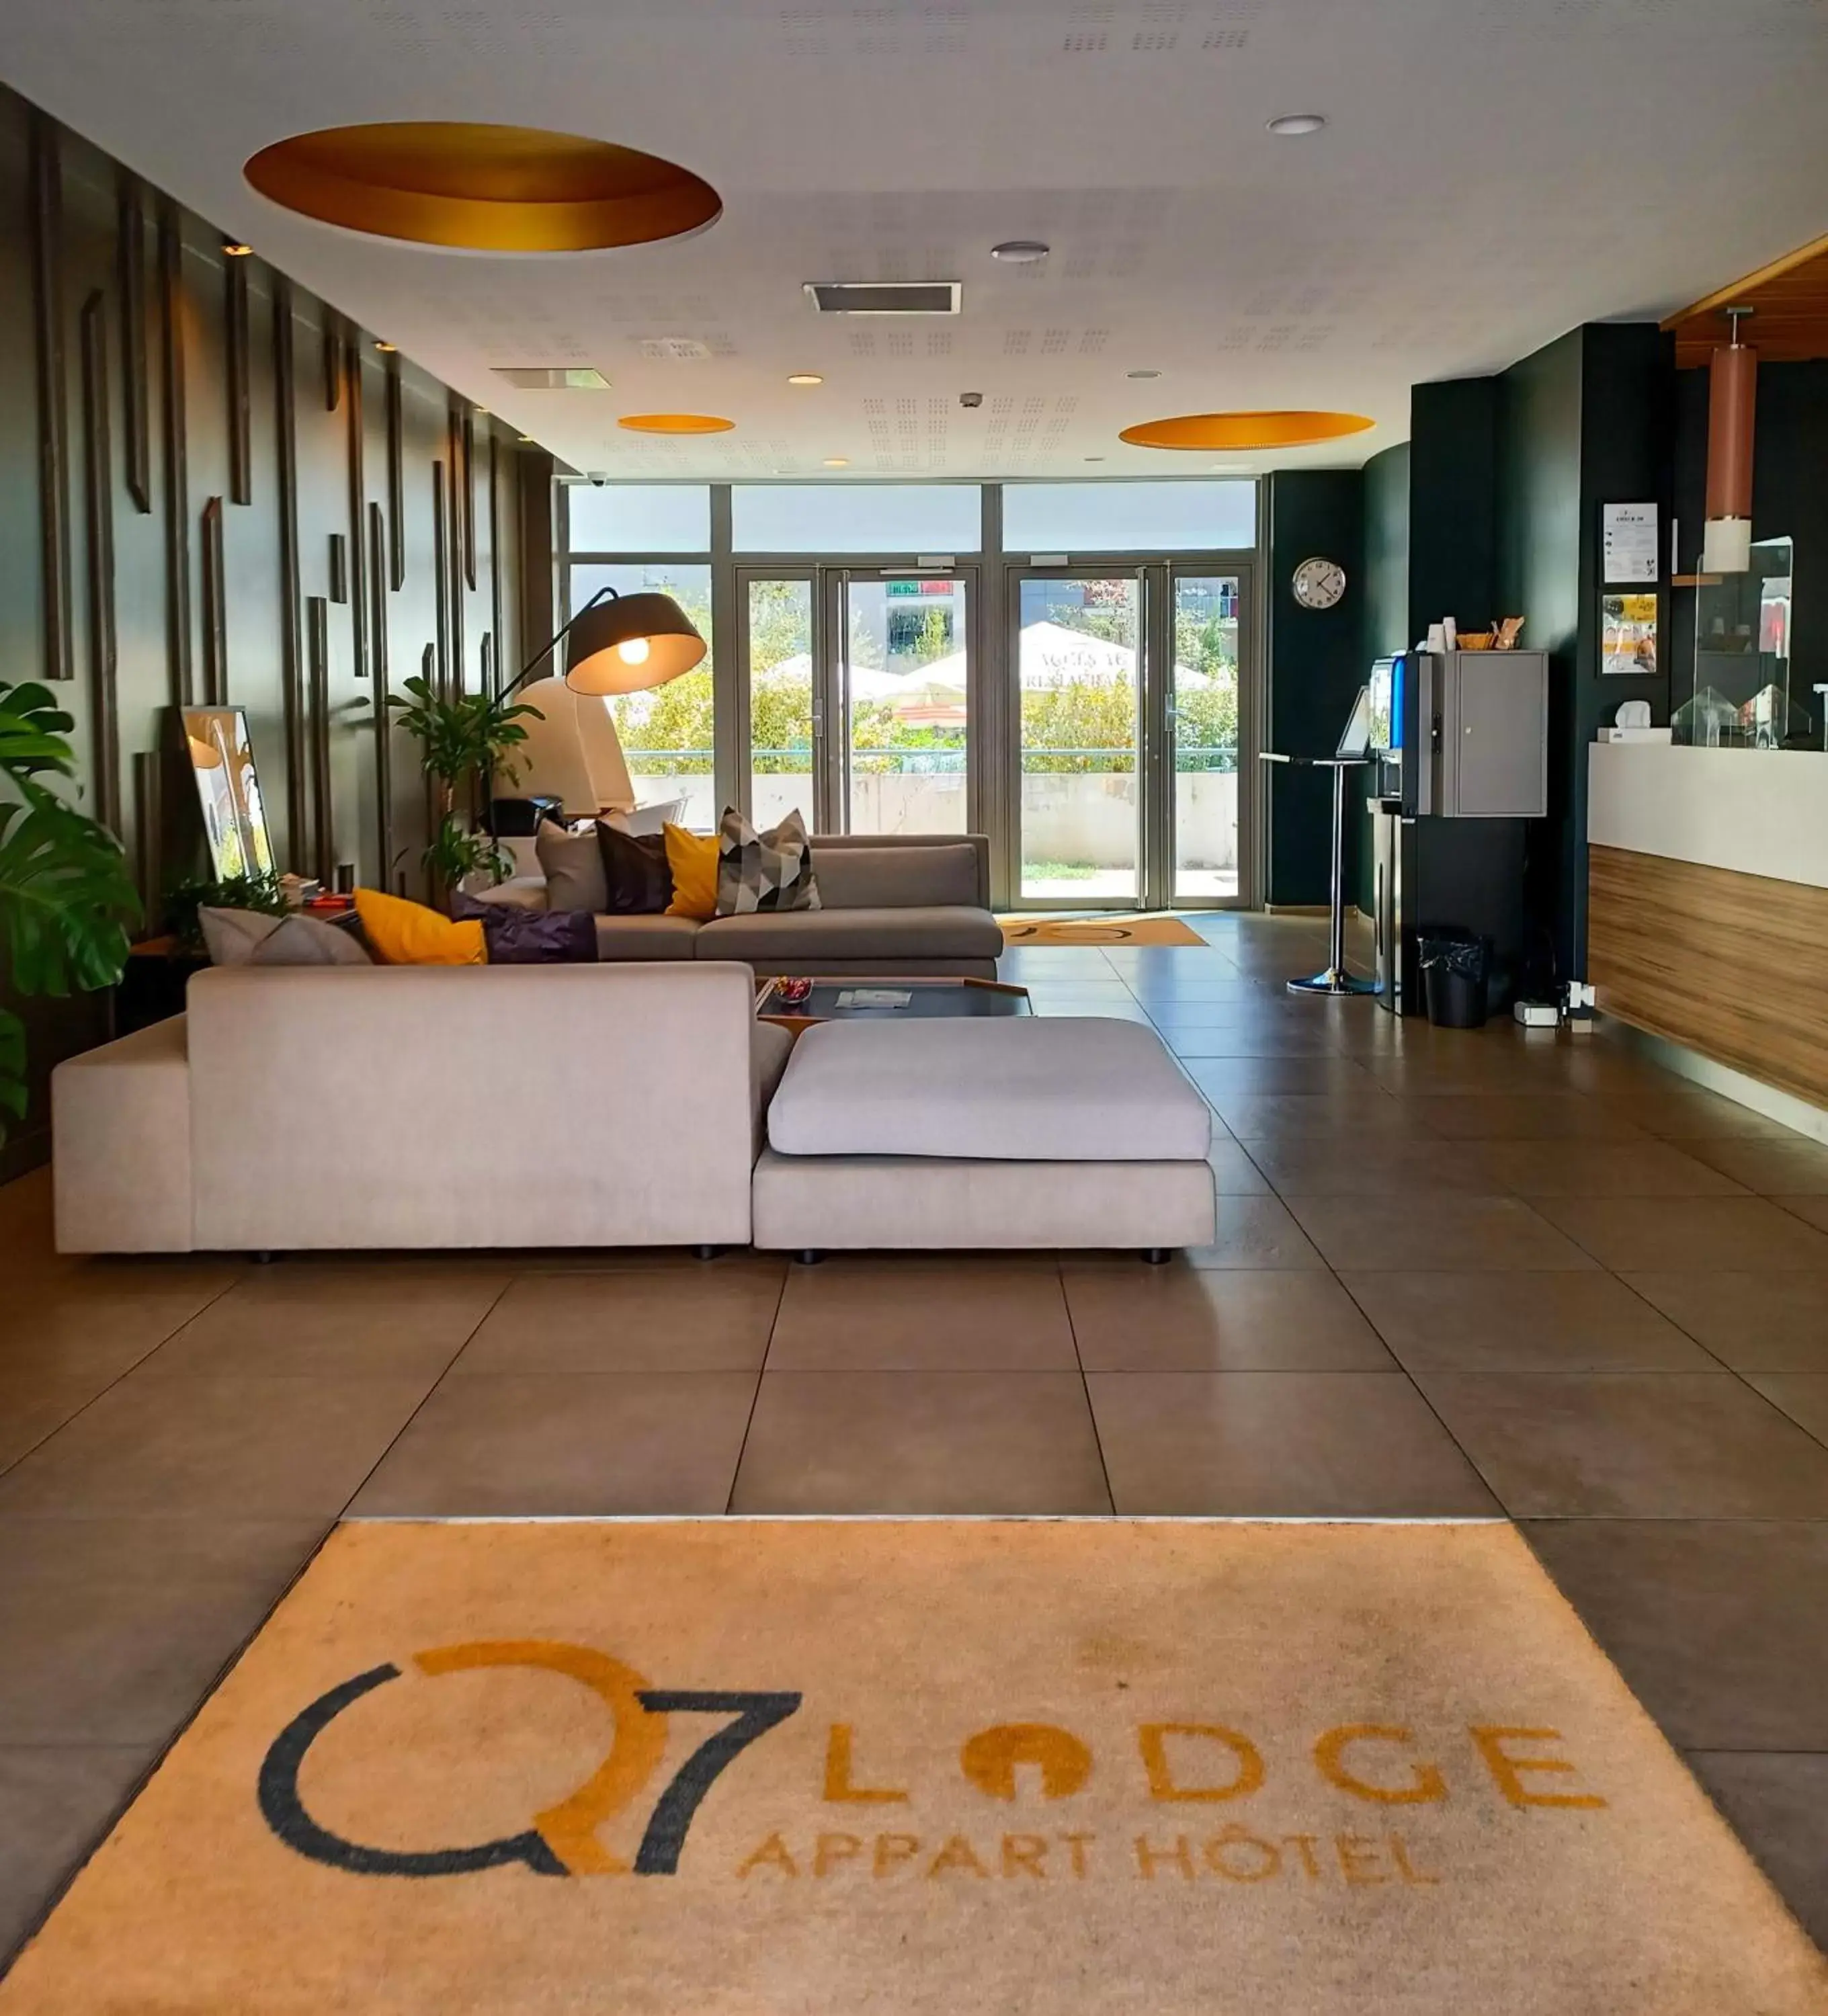 Lobby or reception, Lobby/Reception in Appart hôtel Q7 Lodge Lyon 7